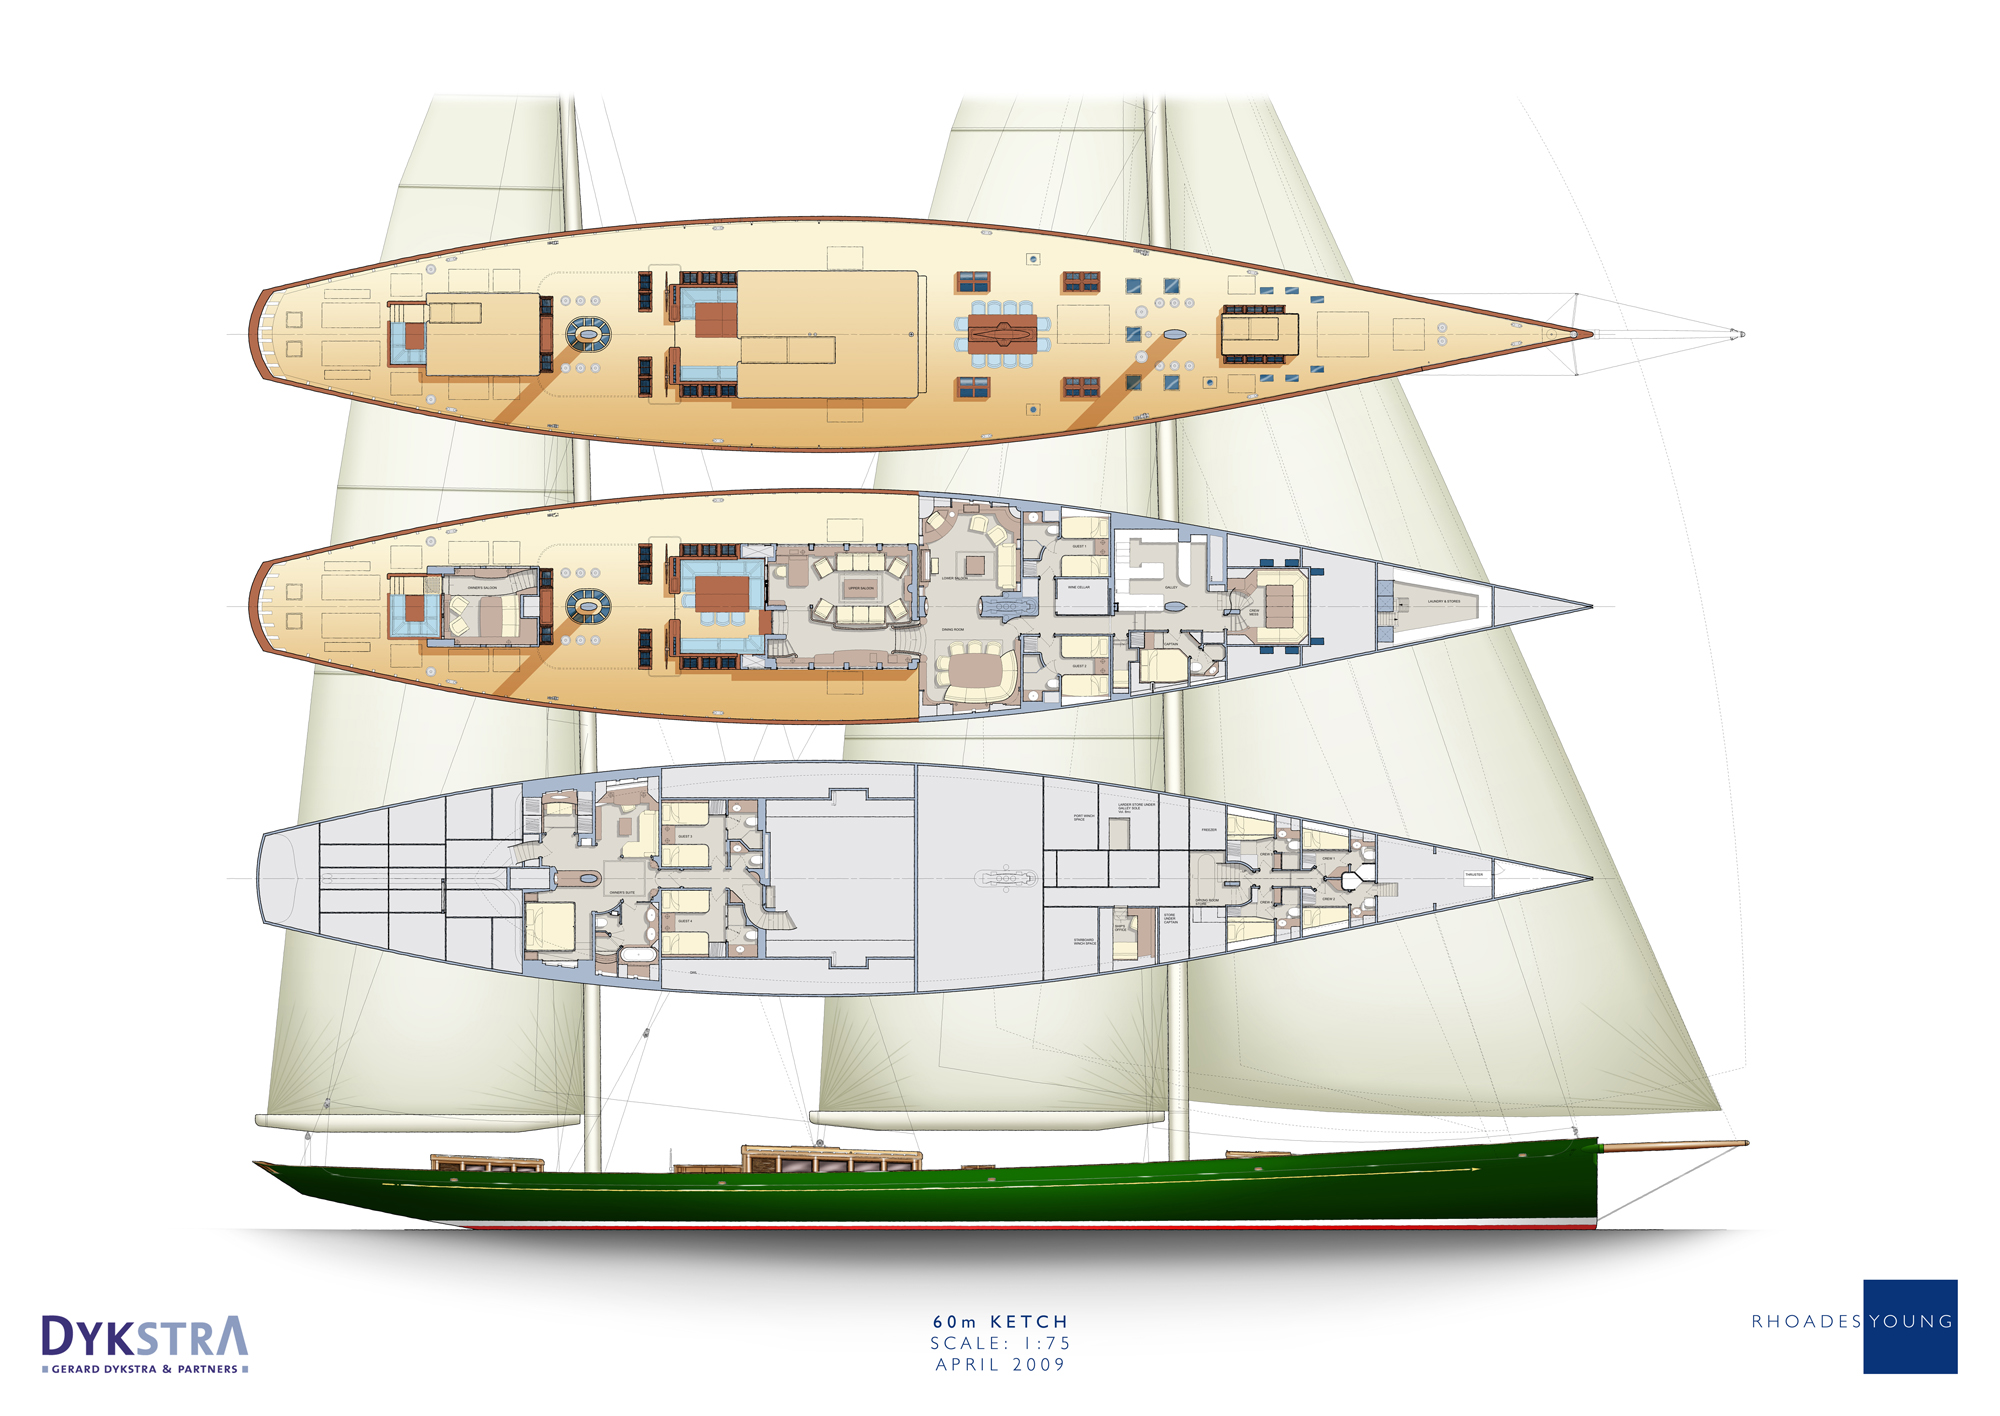 panama yacht layout